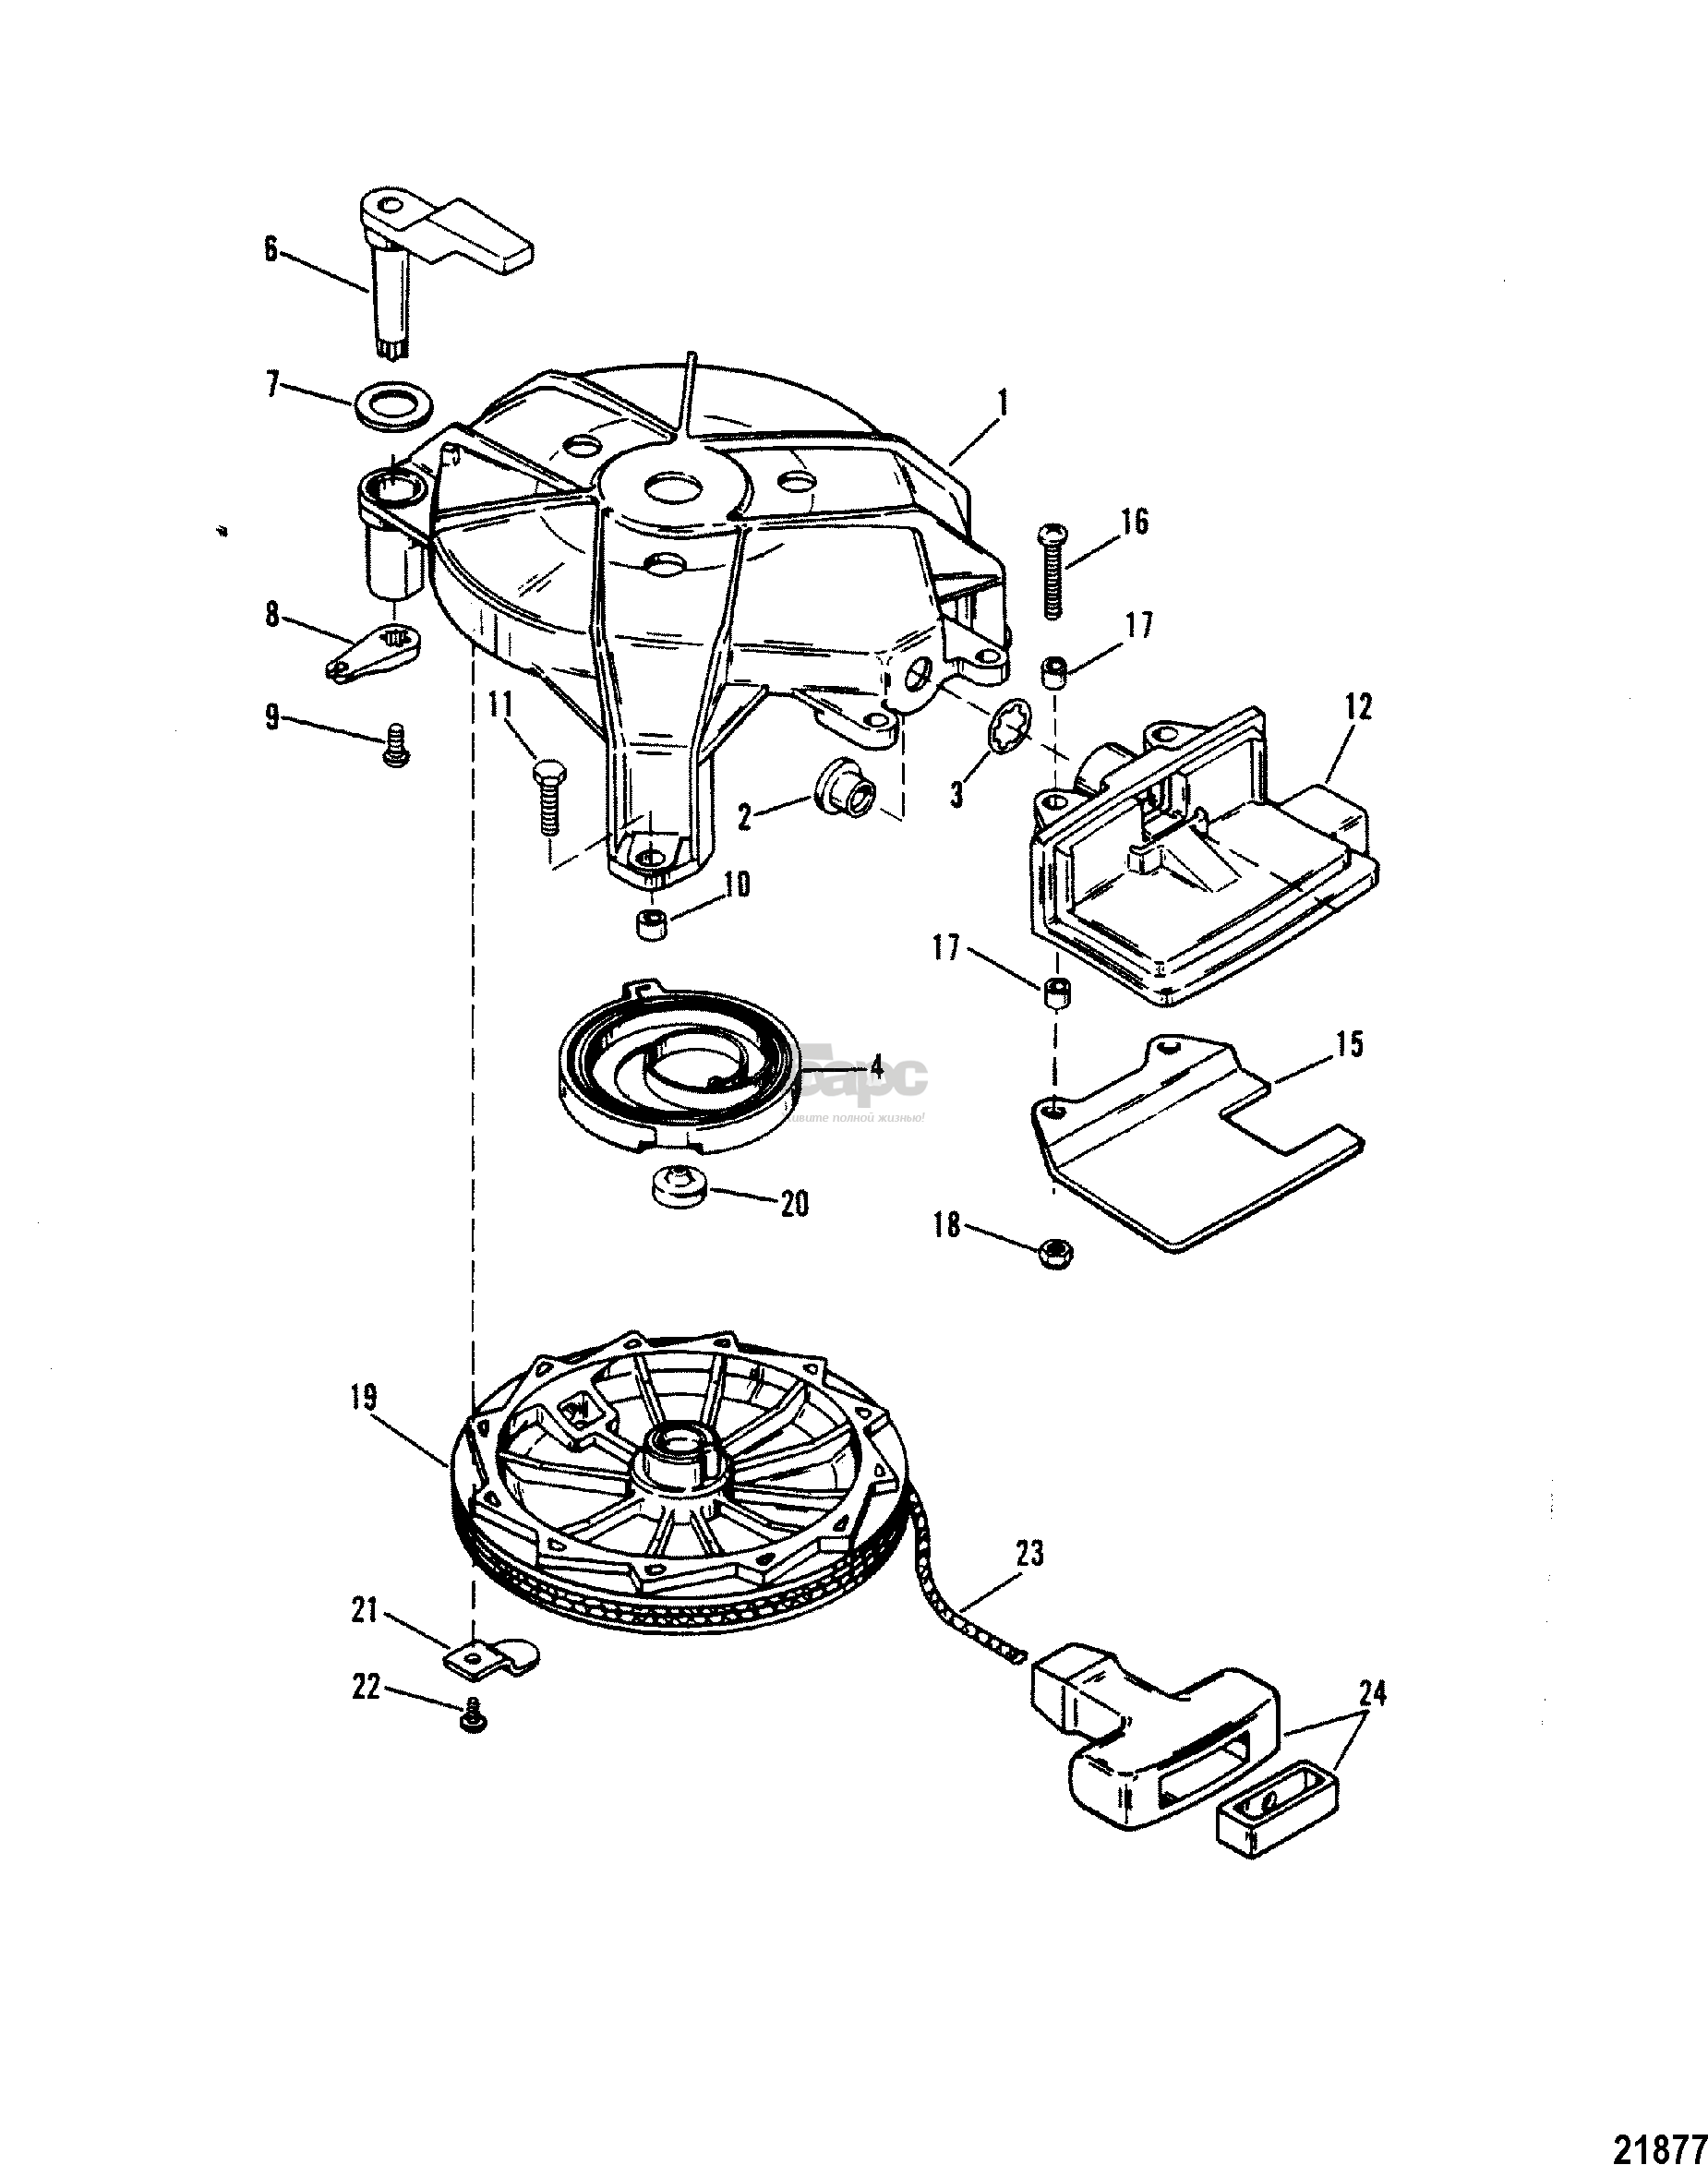 Manual Starter(Design I)